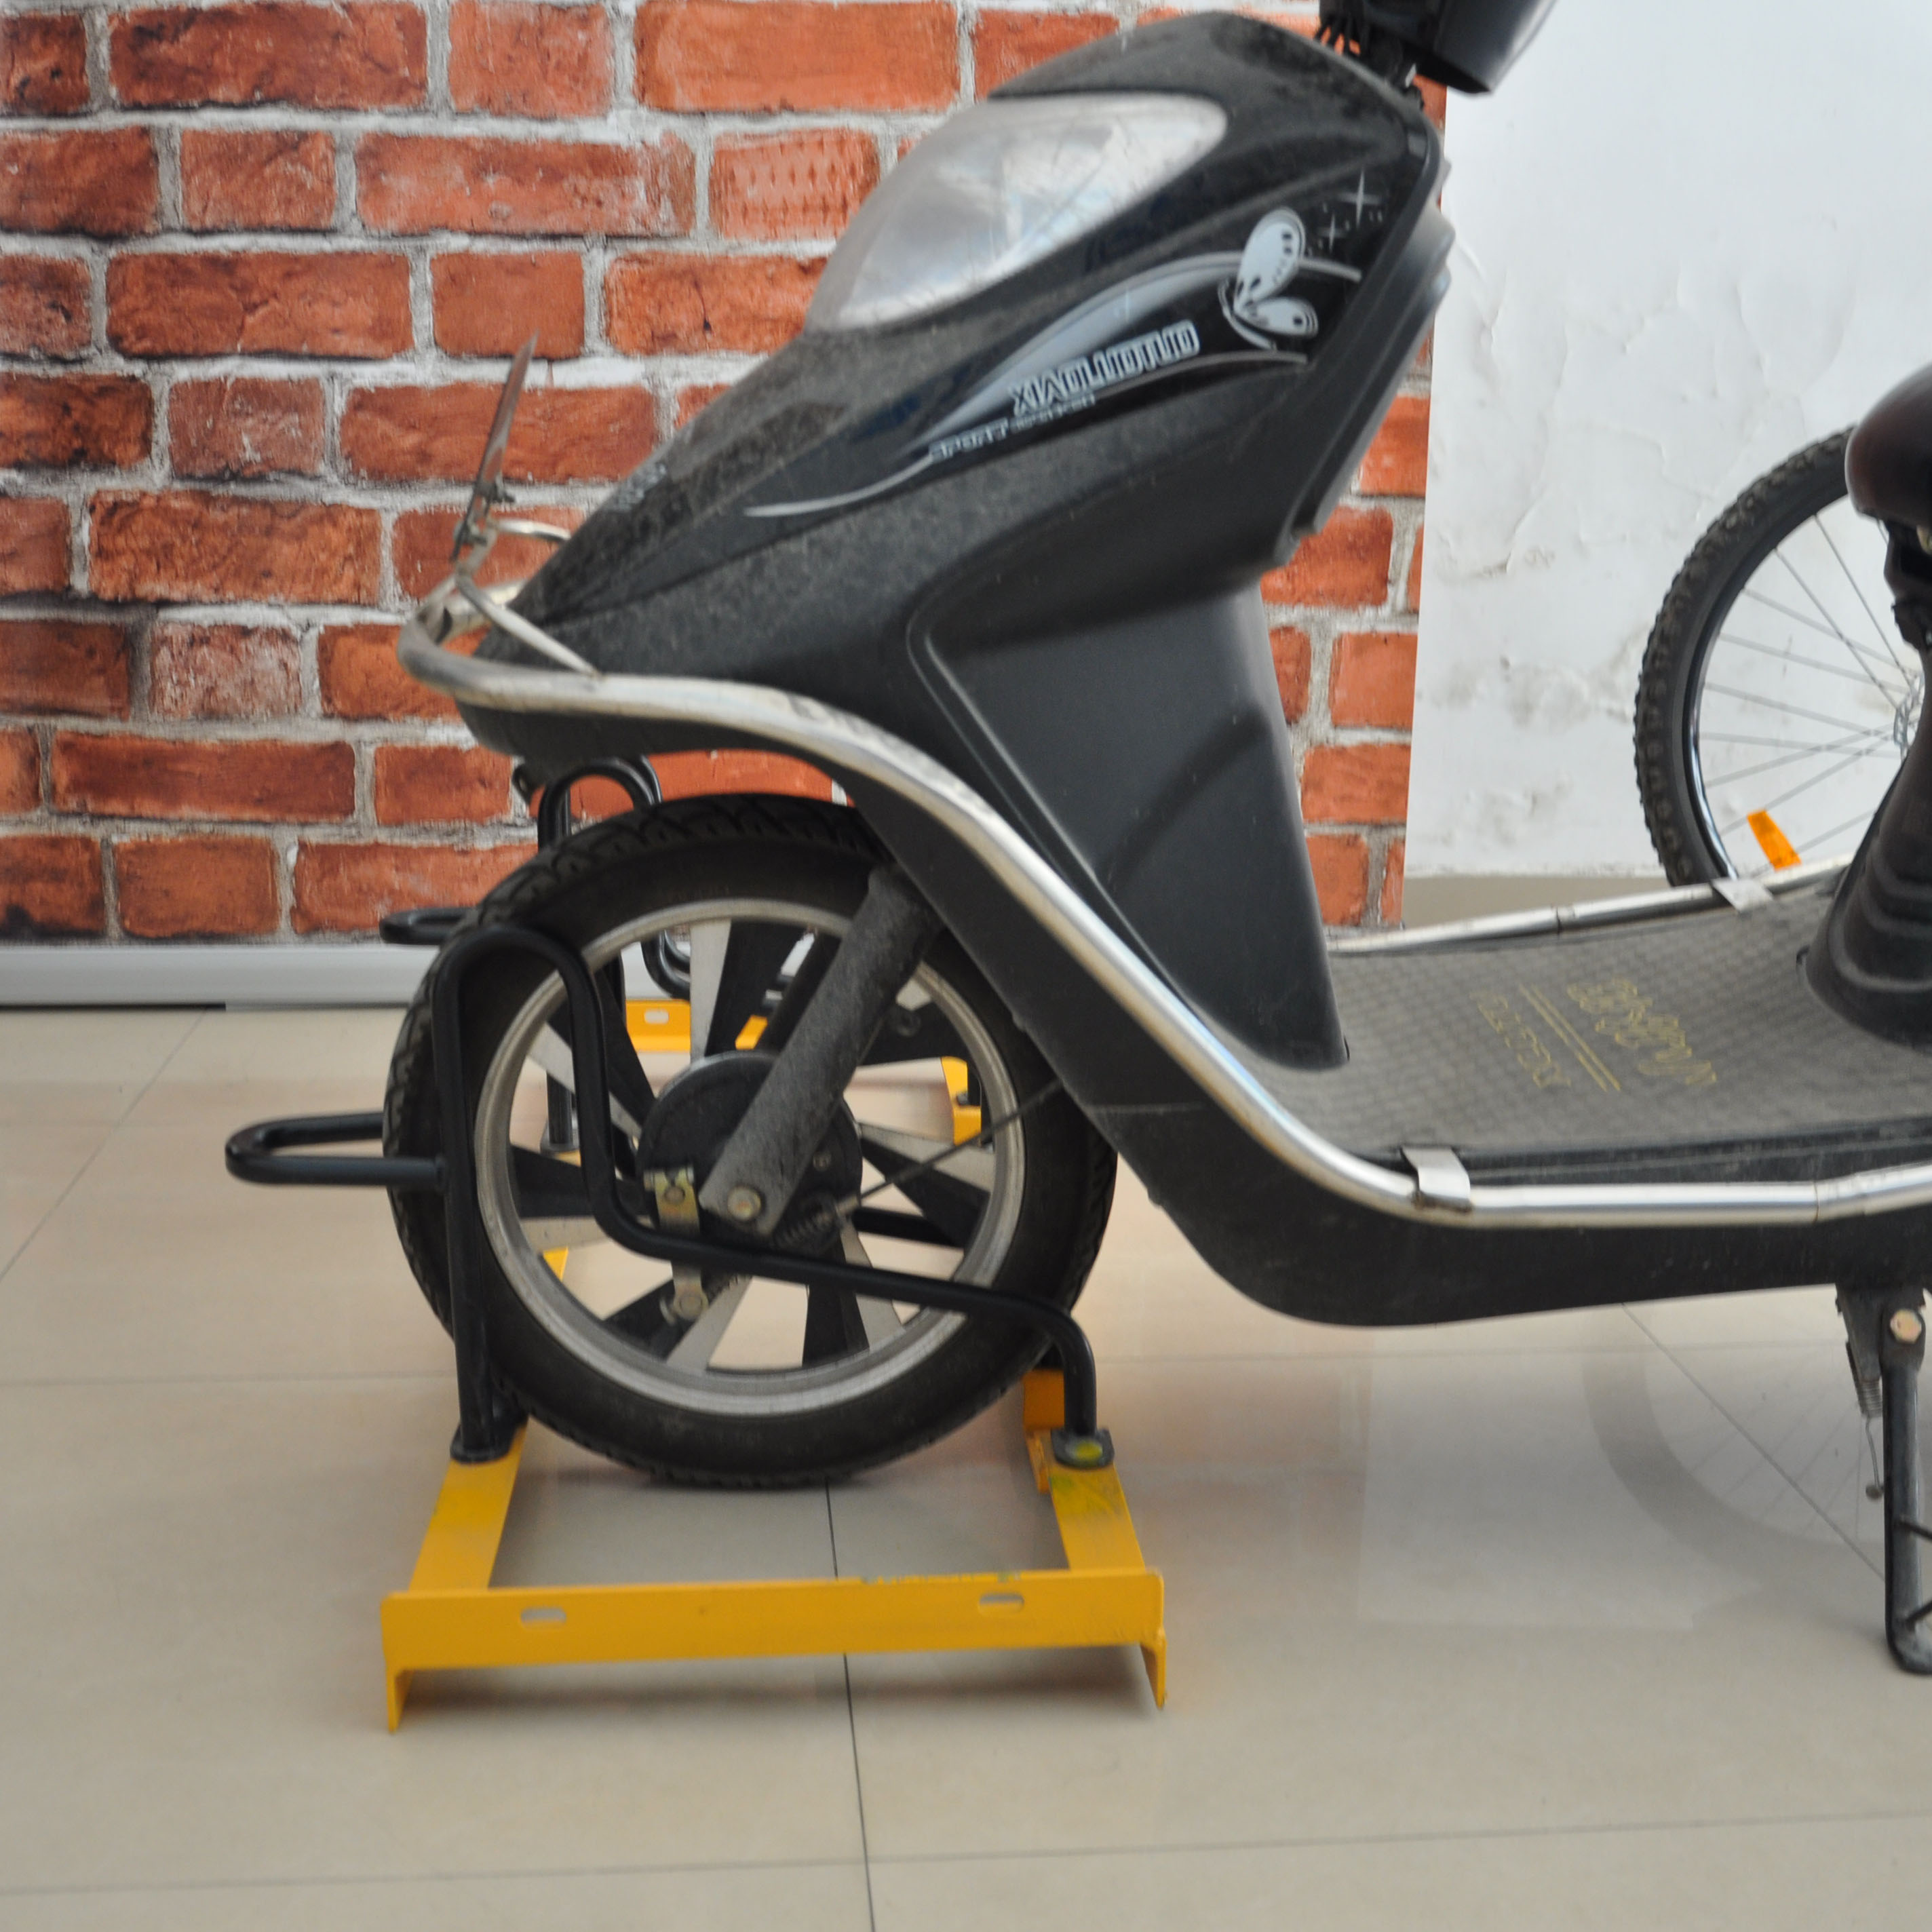 Soporte de bicicleta Mortor de alta calidad para parada de bicicleta de acero al carbono negro